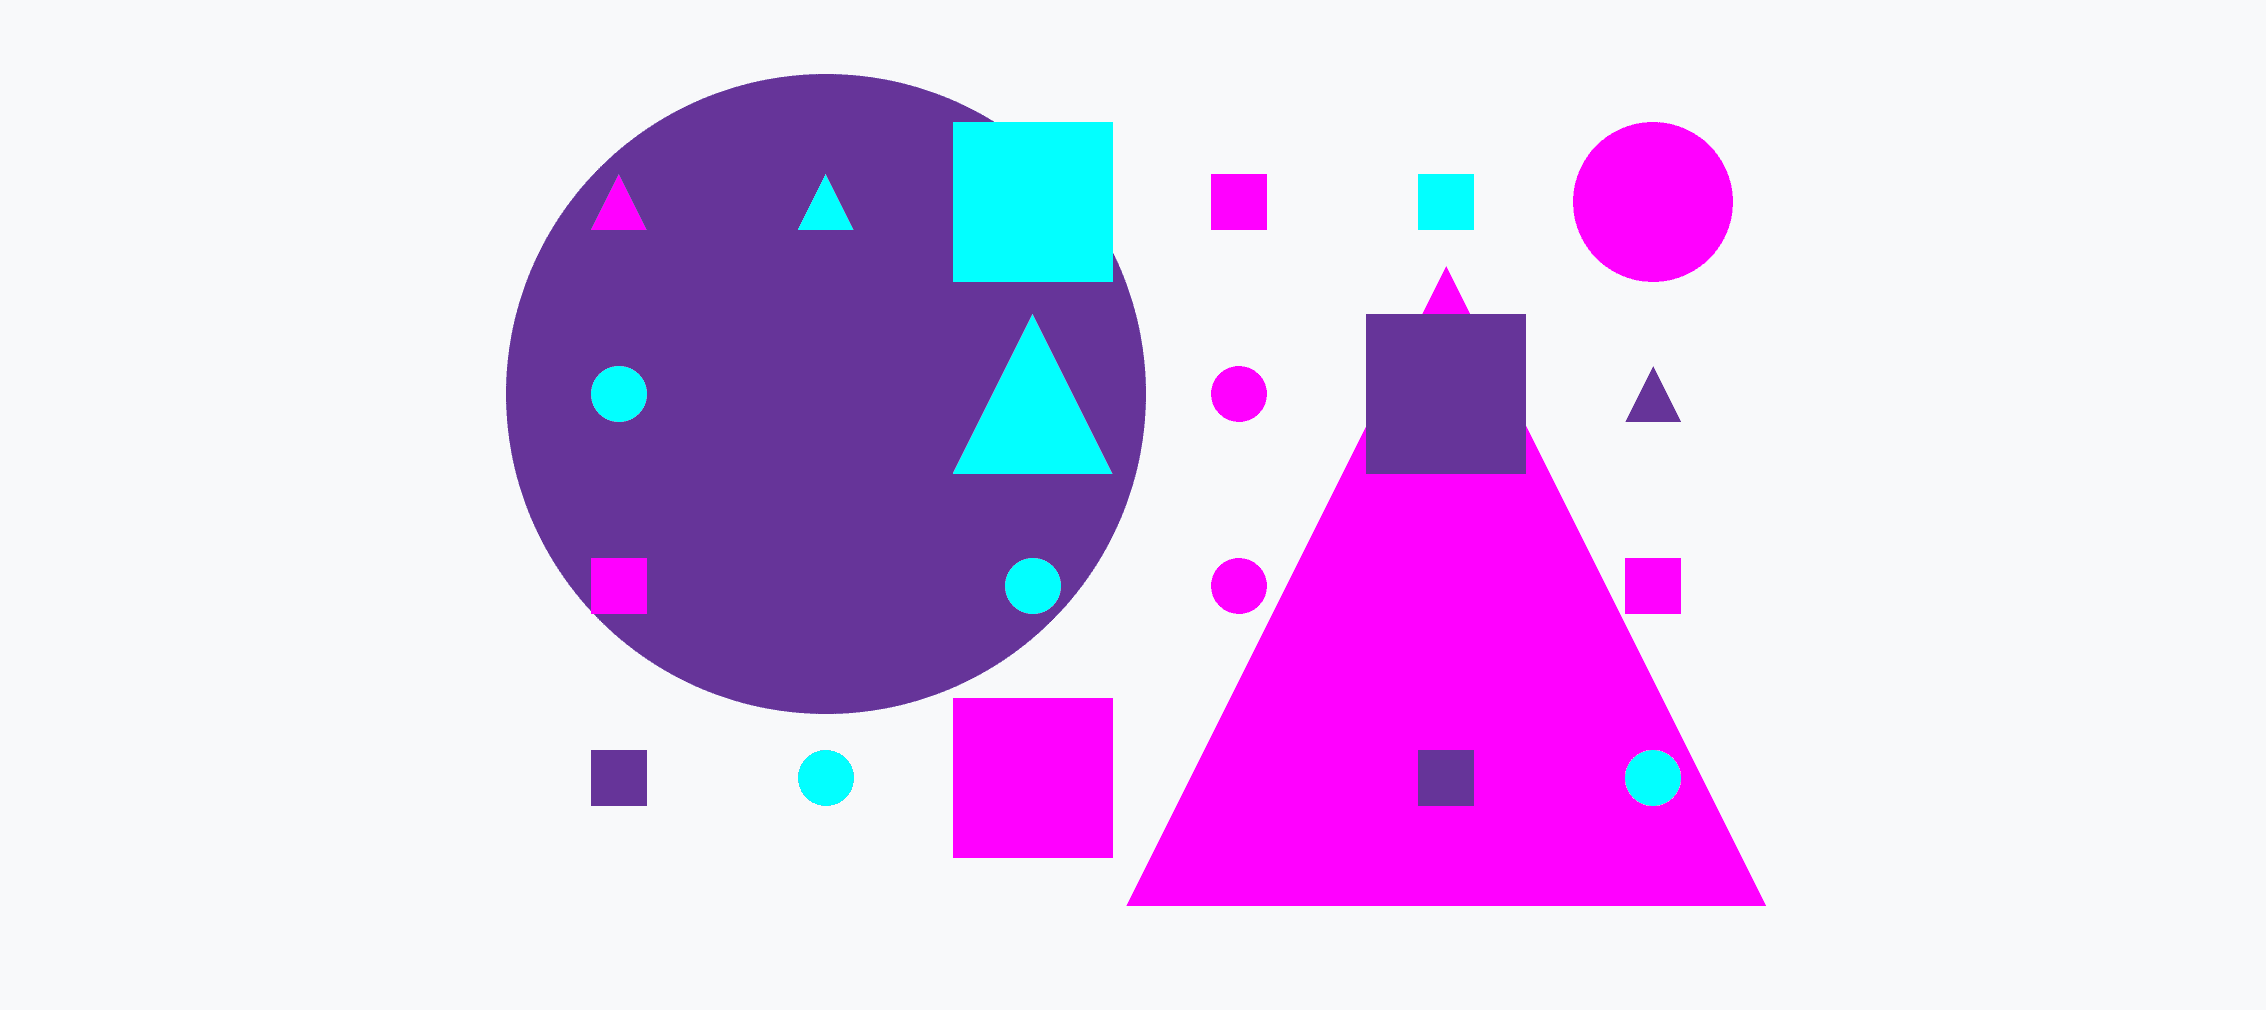 شبکه ای رنگارنگ از دایره های کوچک و بزرگ، مثلث ها و مربع ها.